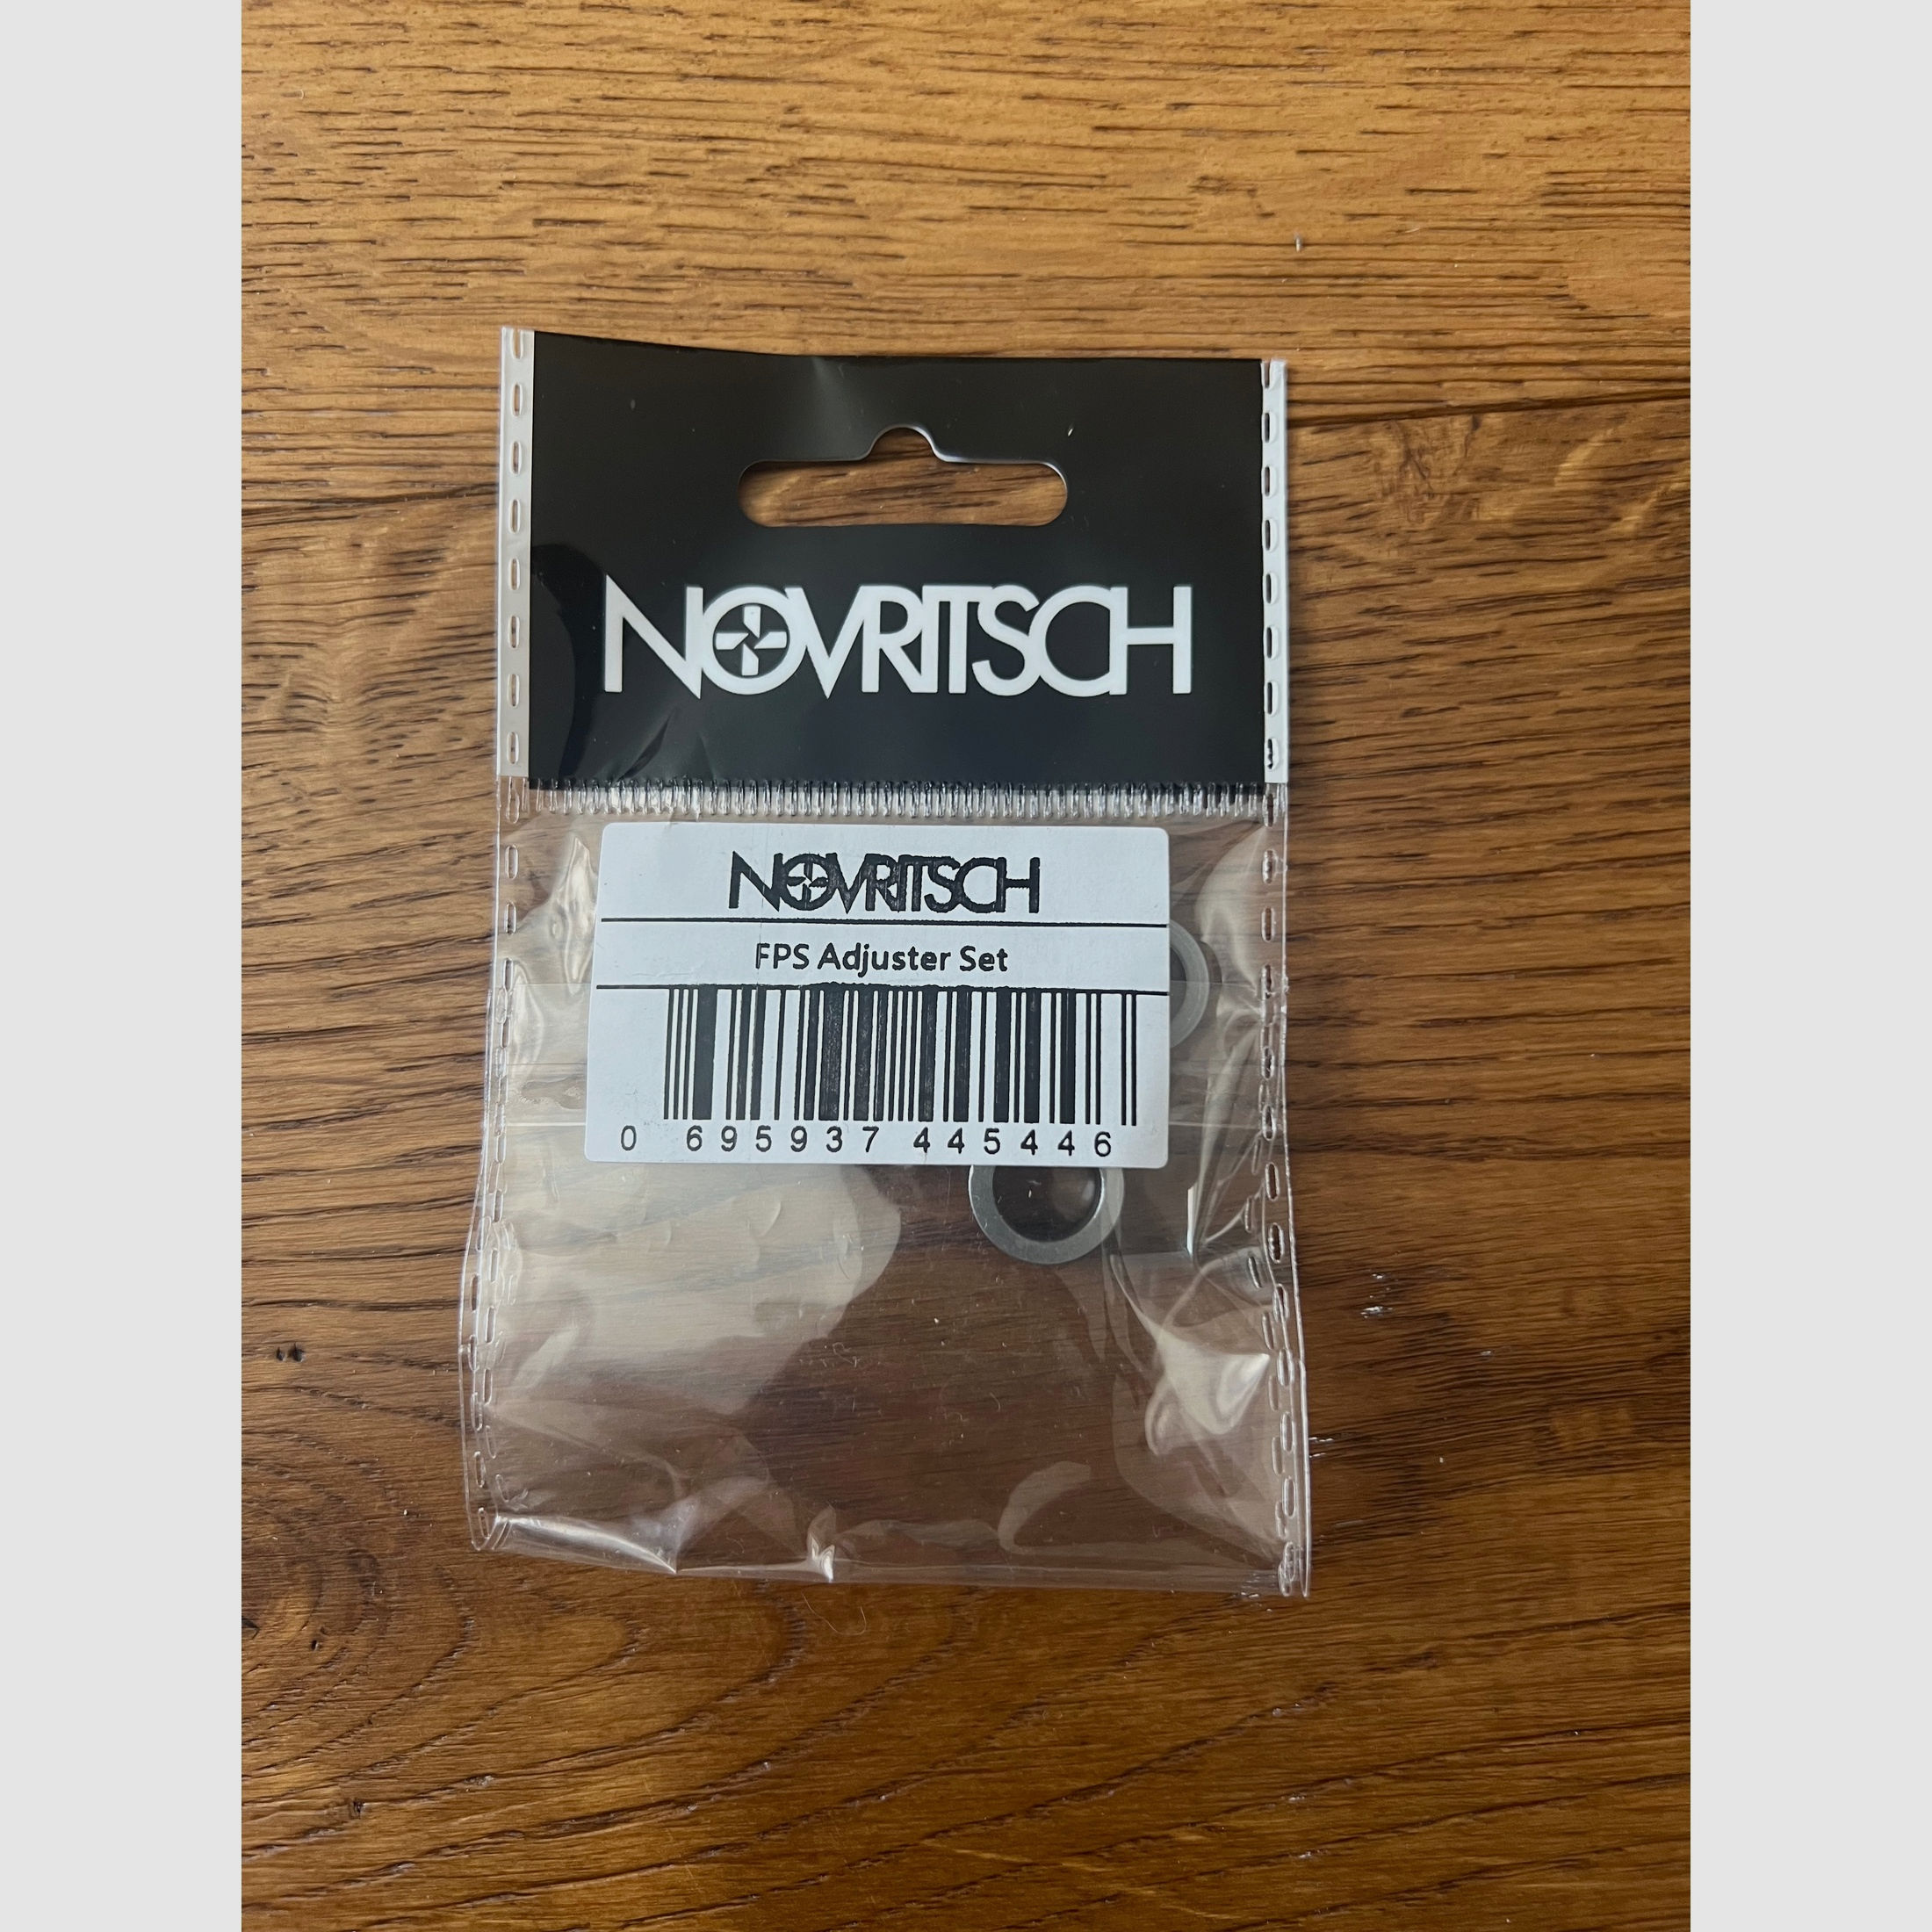 Novritsch Ssg10 A1 komplett Kit 